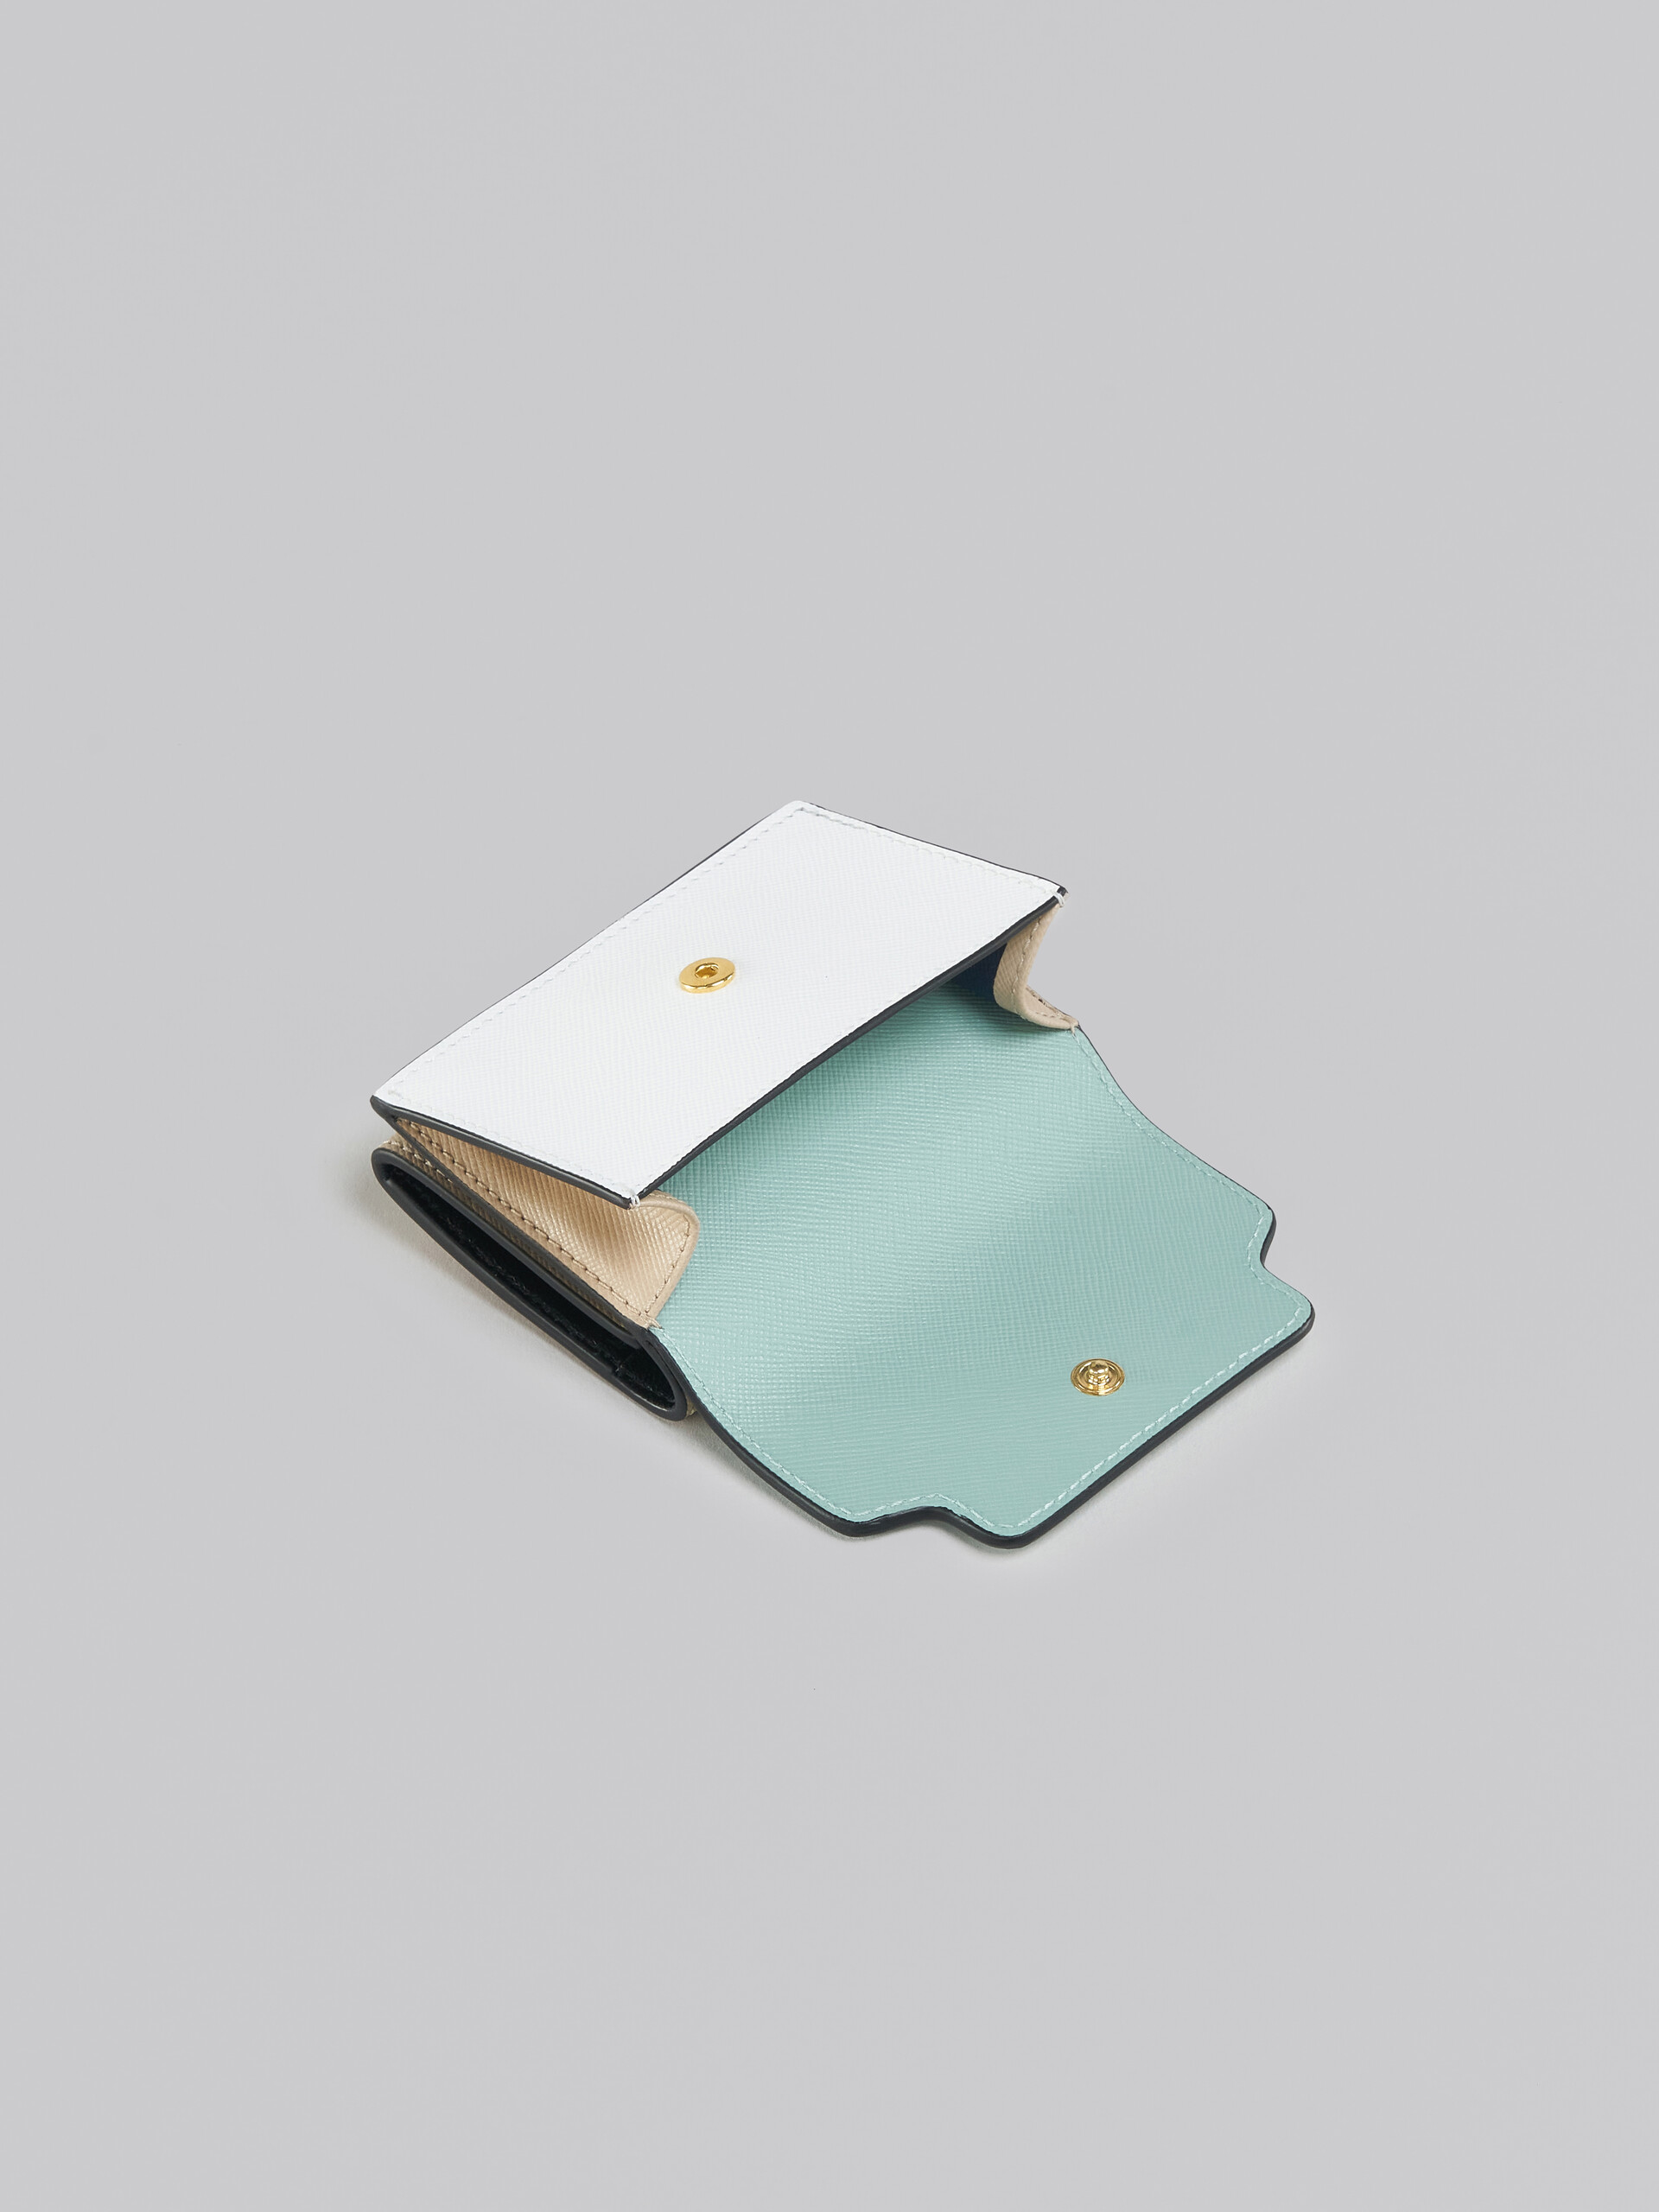 Portafoglio tri-fold in pelle saffiano verde, bianca e marrone - Portafogli - Image 5